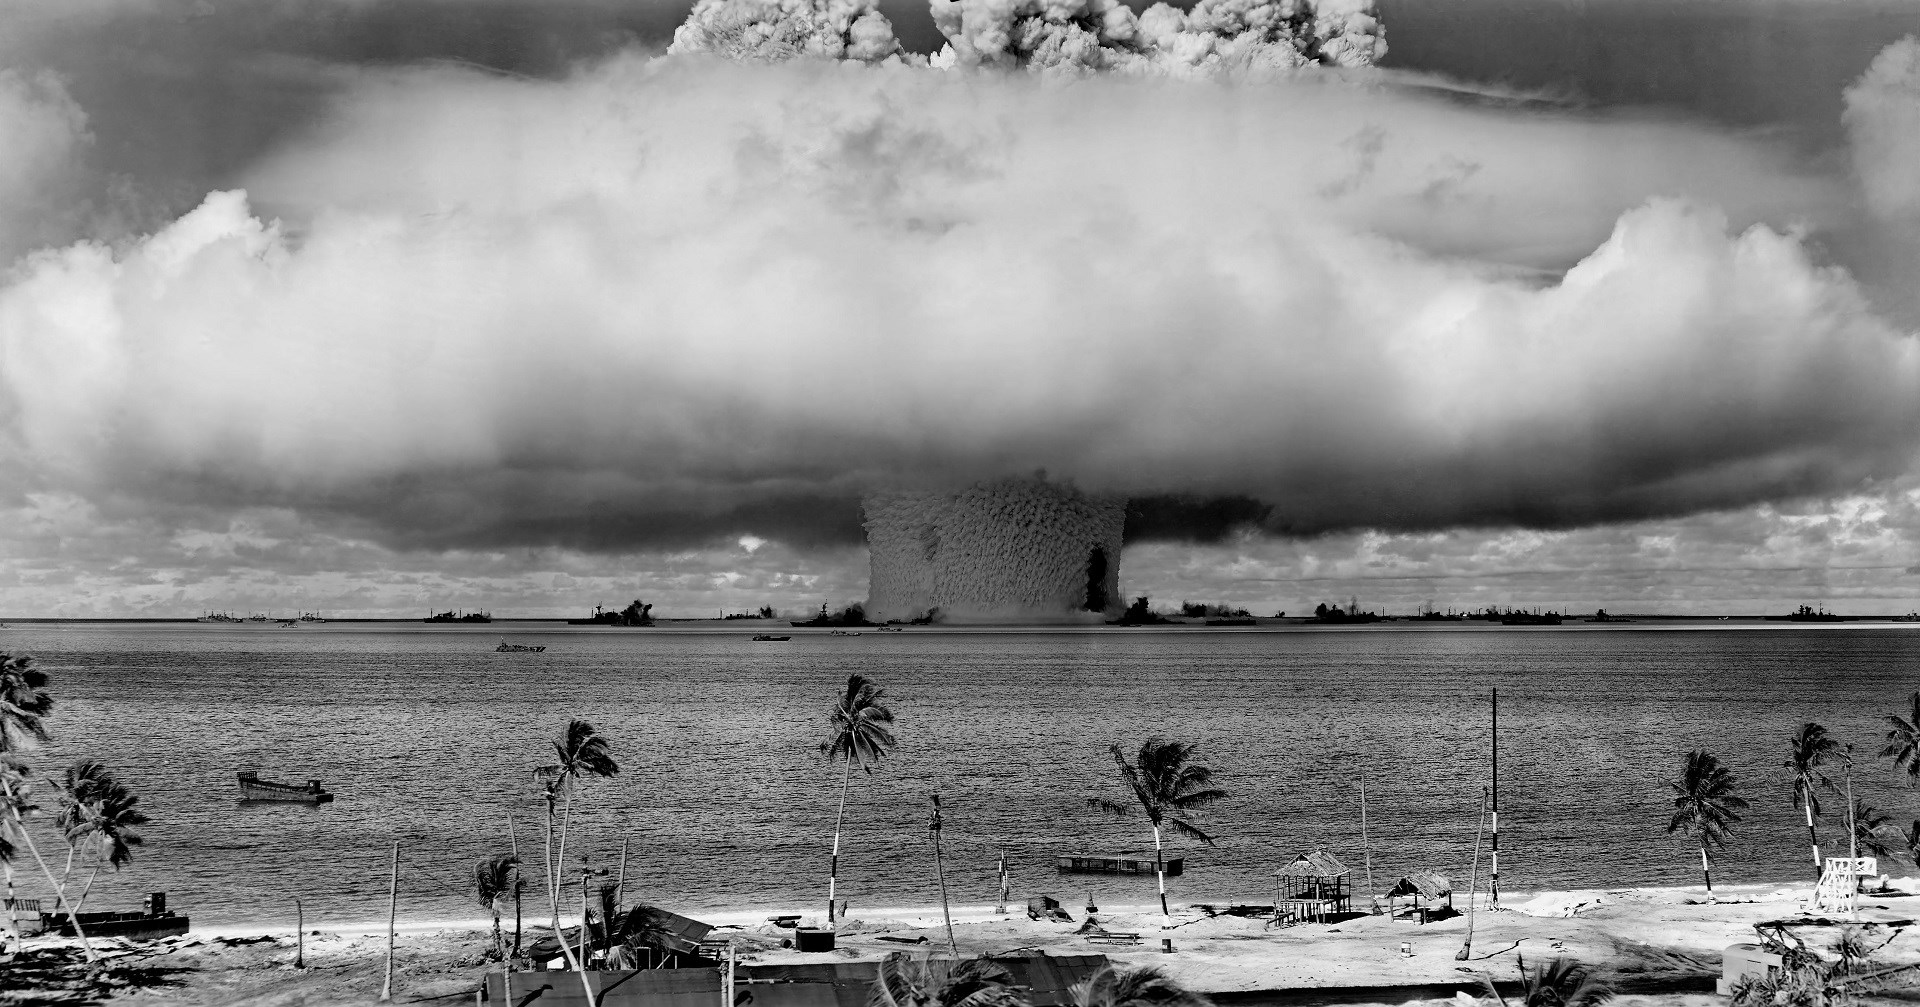 Küçük bir nükleer savaş bile yok oluşa neden olabilir: Nasıl mı?